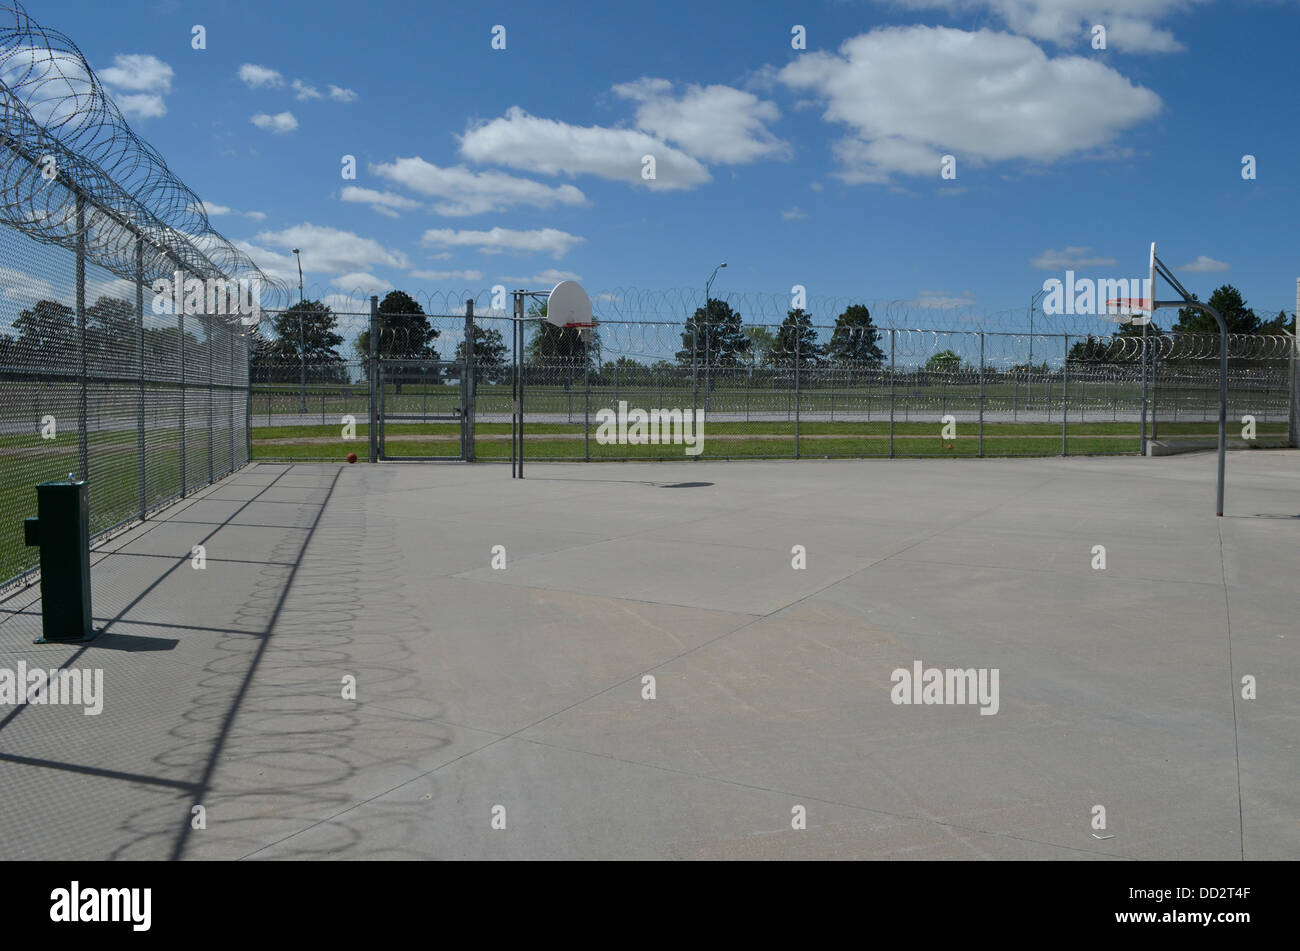 Eingezäunten Garten am amerikanischen Hochsicherheitsgefängnis. Hier dürfen Häftlinge außerhalb zu laufen, trainieren und Kontakte zu knüpfen. Stockfoto